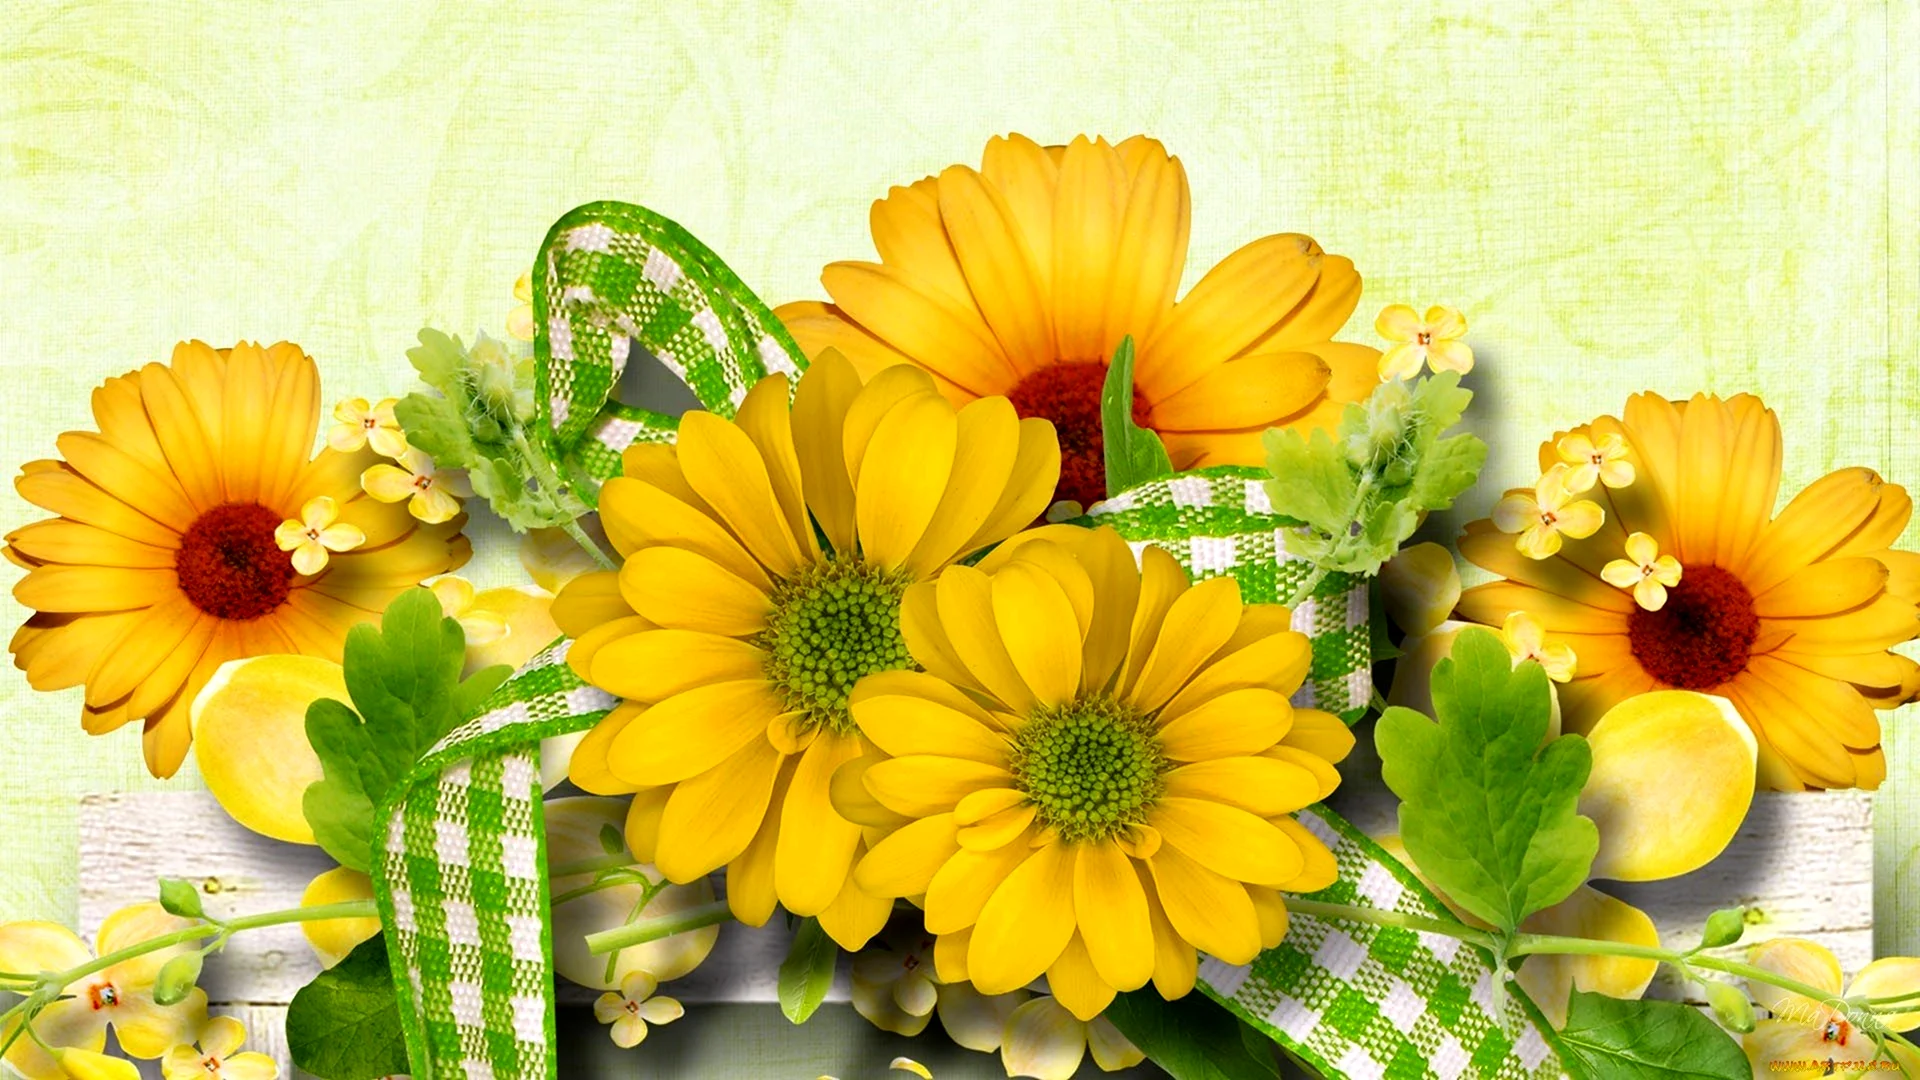 Фон для открытки с желтыми хризантемами